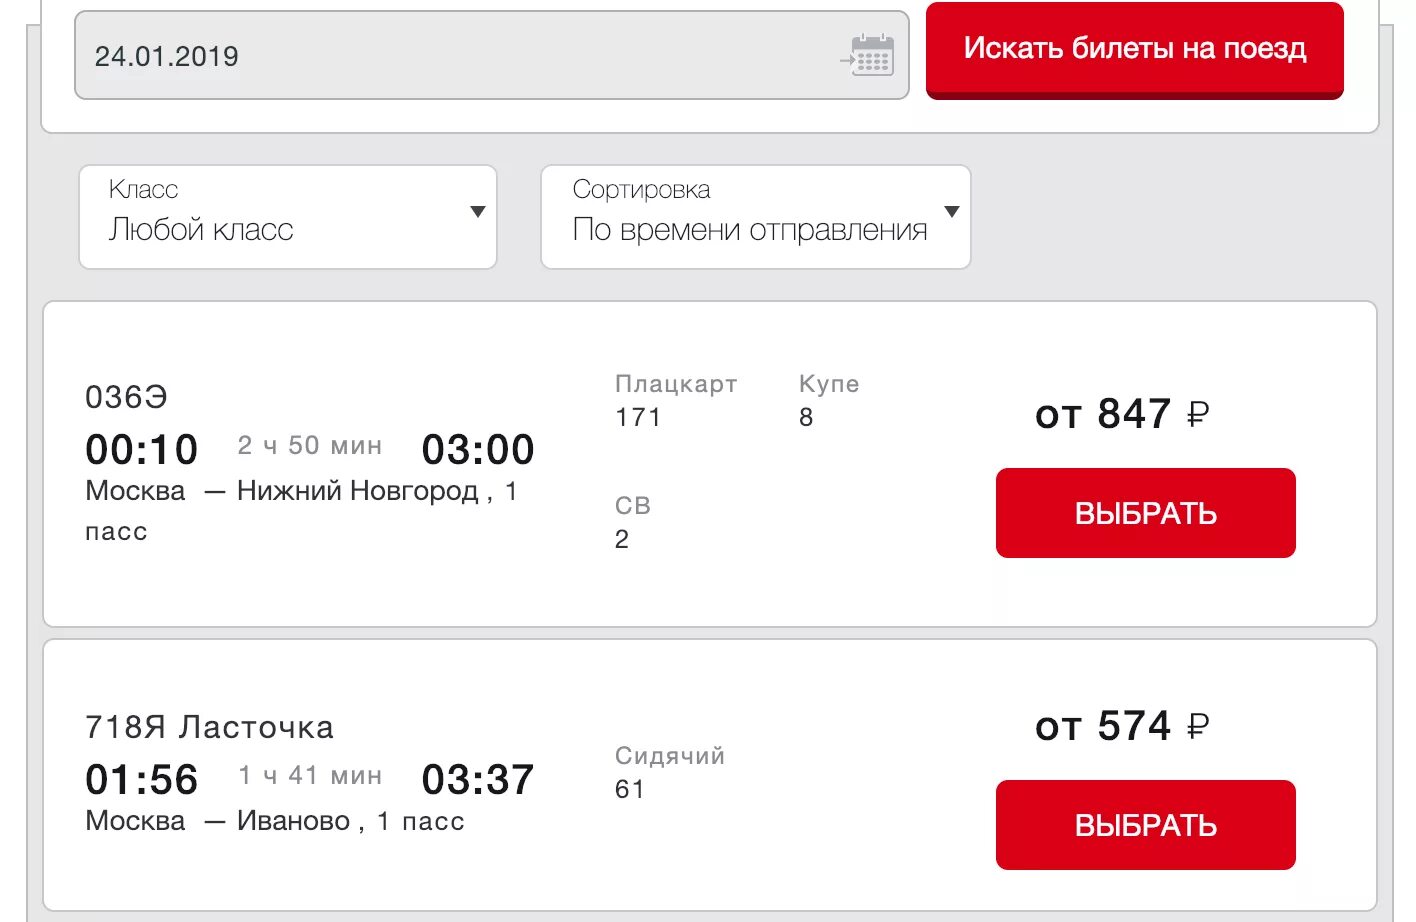 Купить билеты на московский поезд